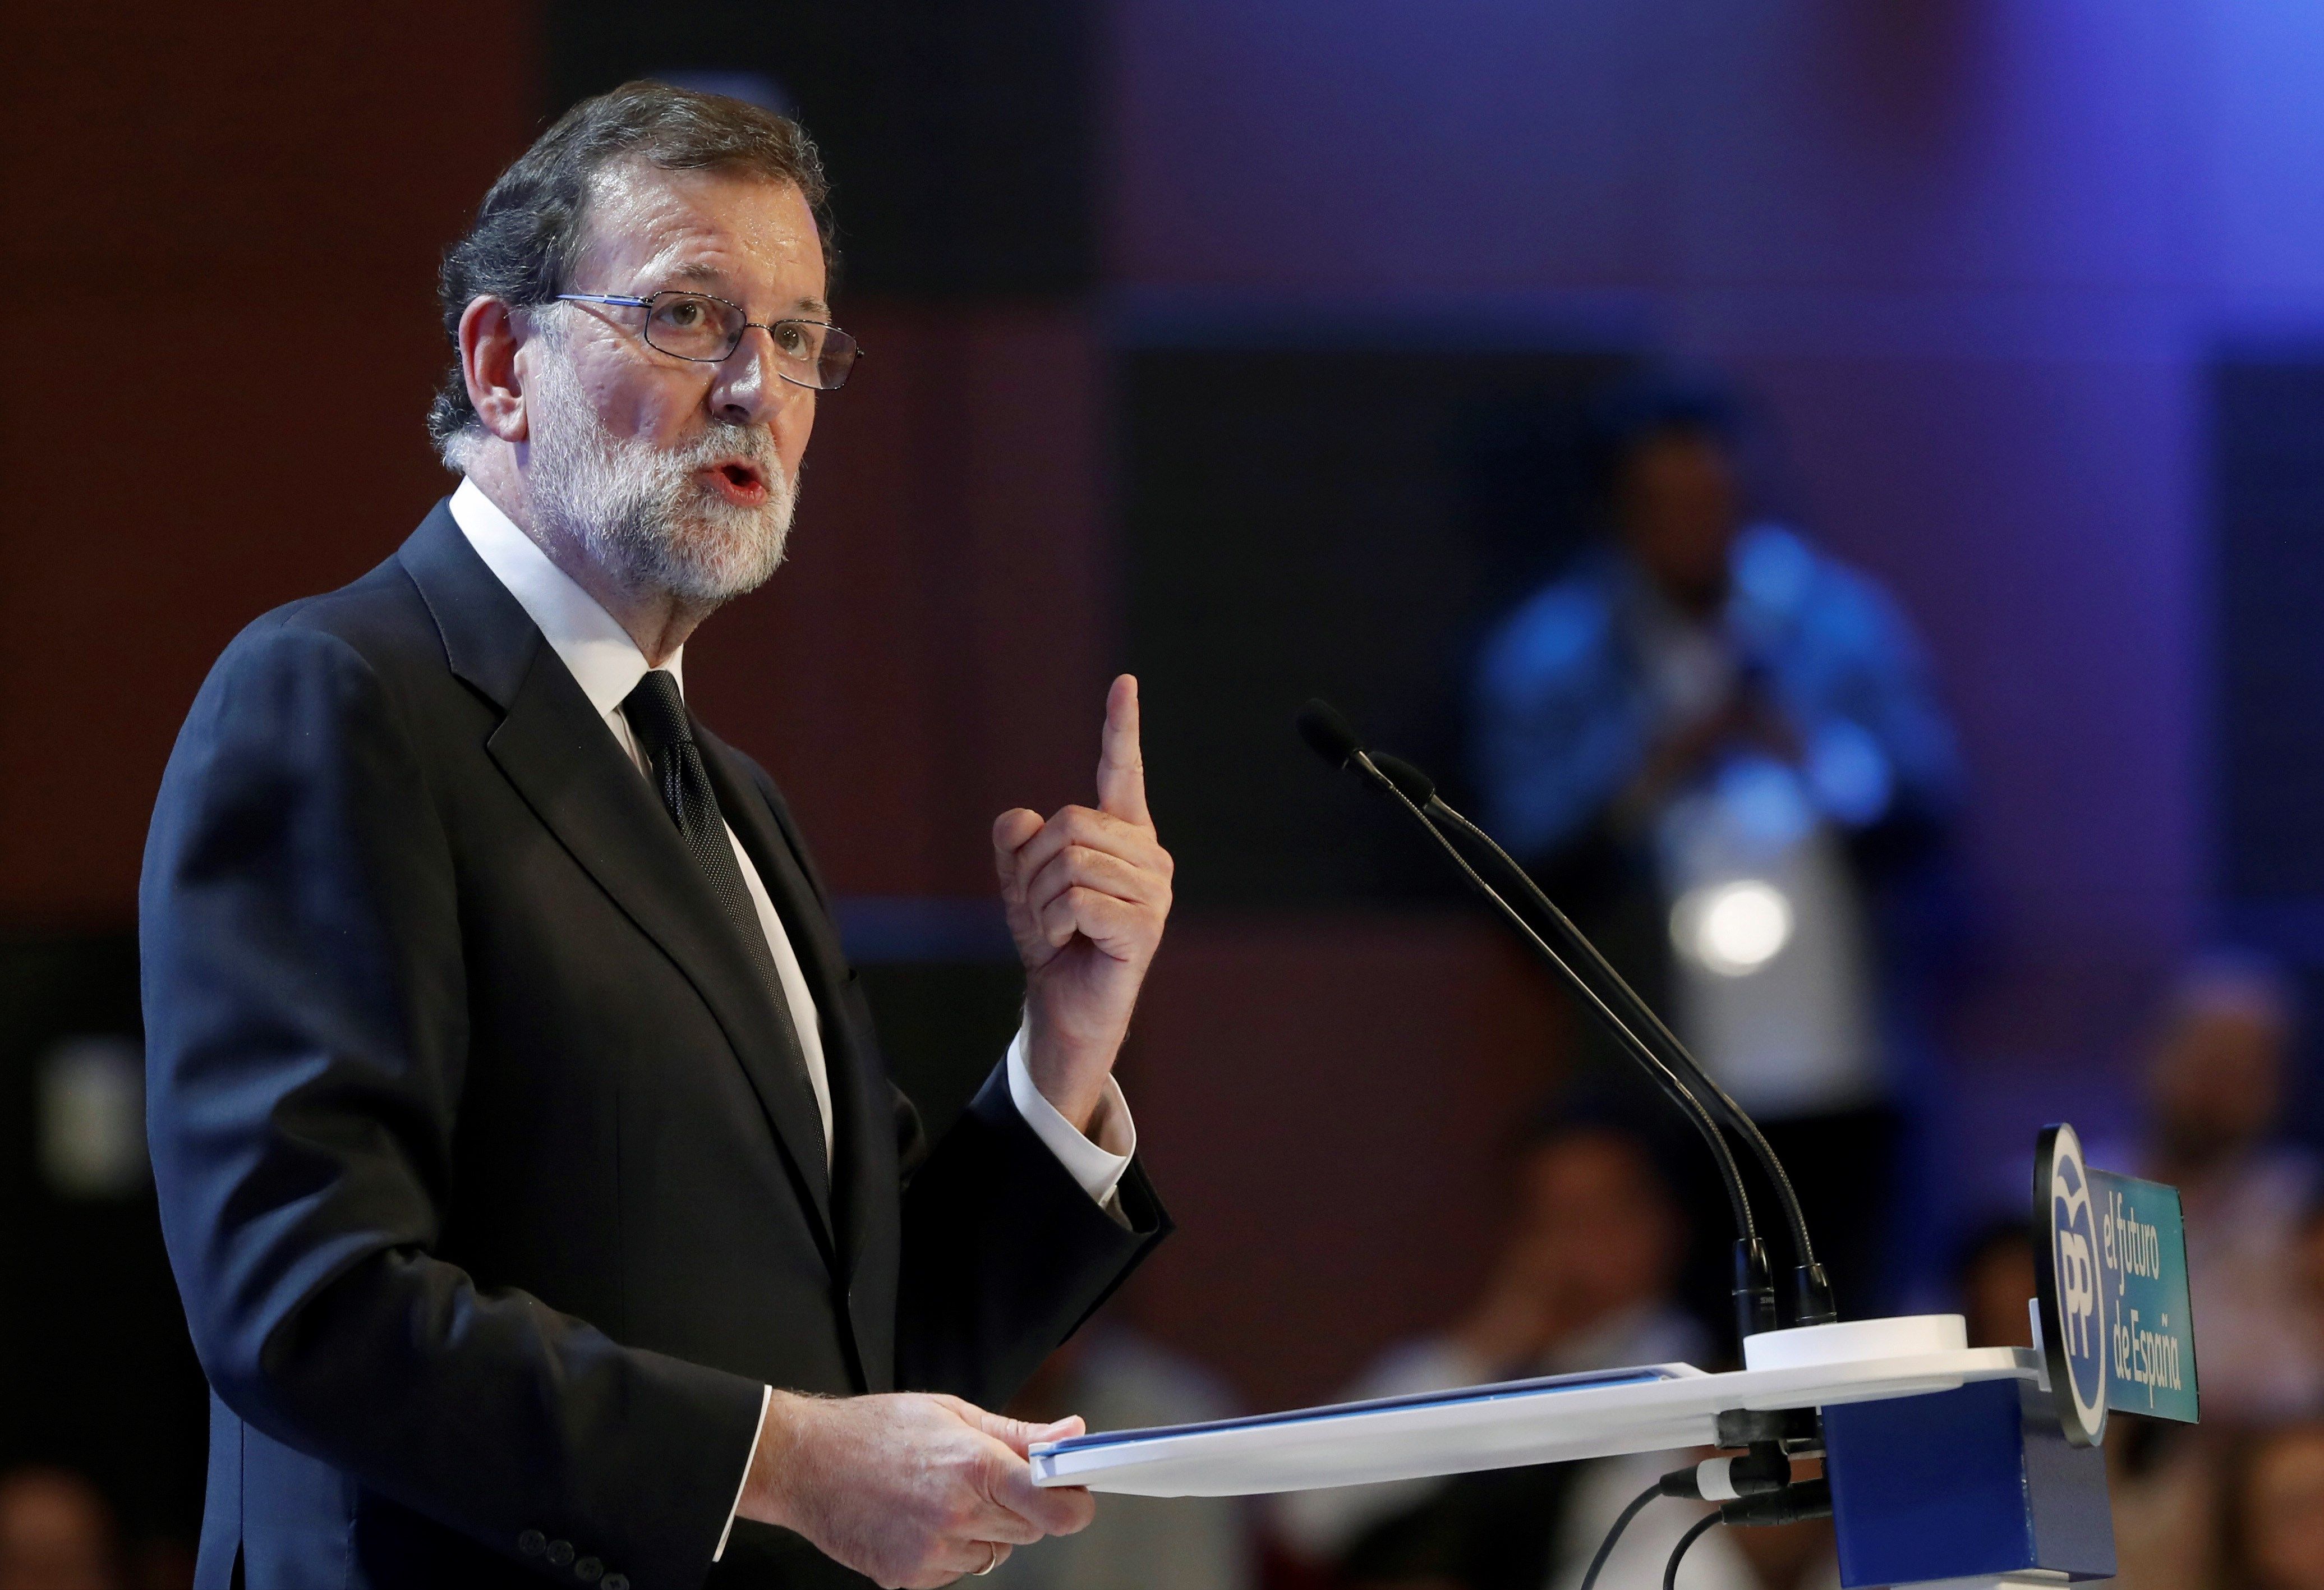 El presidente del PP, Mariano Rajoy, durante su intervención en el Congreso Nacional del PP, en Madrid. EFE